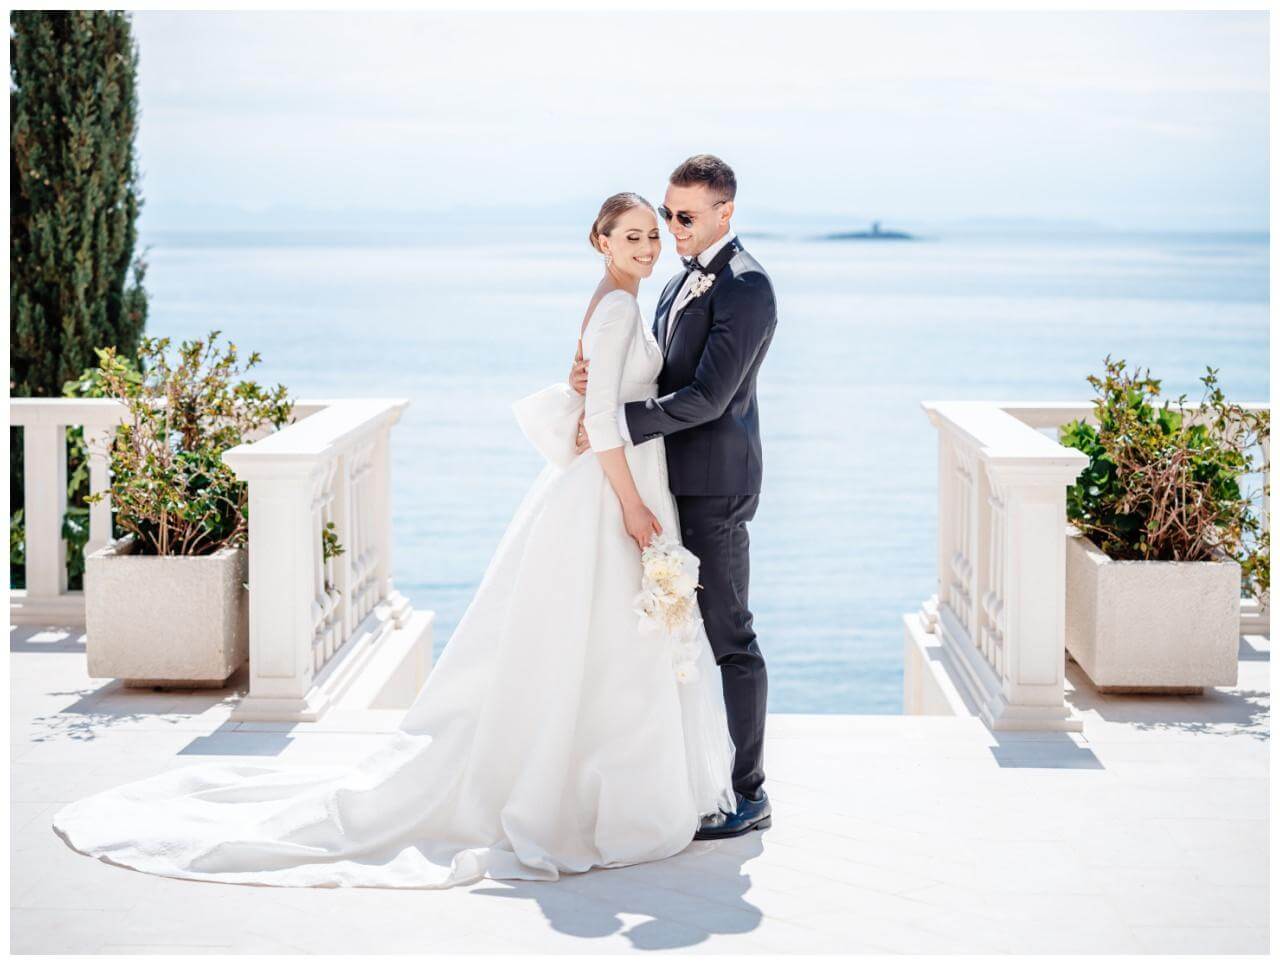 Luxus Hochzeit in weiß Brautpaar am Meer Wedding Kroatien, wedding in croatia,hochzeitsplanerin kroatien, hochzeit in kroatien